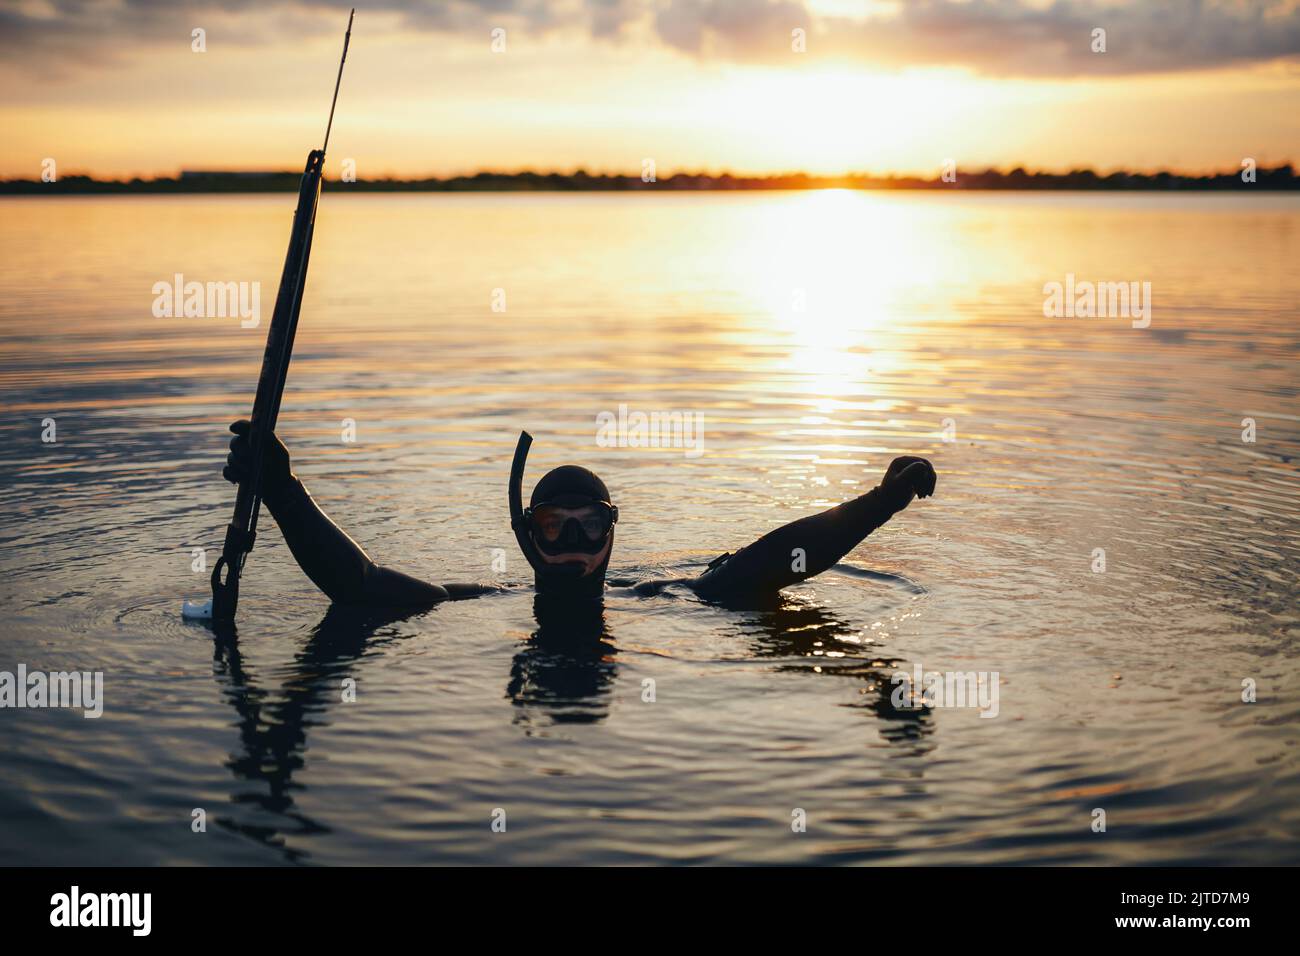 Speerfischertaucher feiern, während sie in Meerwasser getaucht sind und eine Speergun in der Hand halten. Fröhlicher Taucher, der beim Sonnenuntergang Speerfischen genießt. Stockfoto